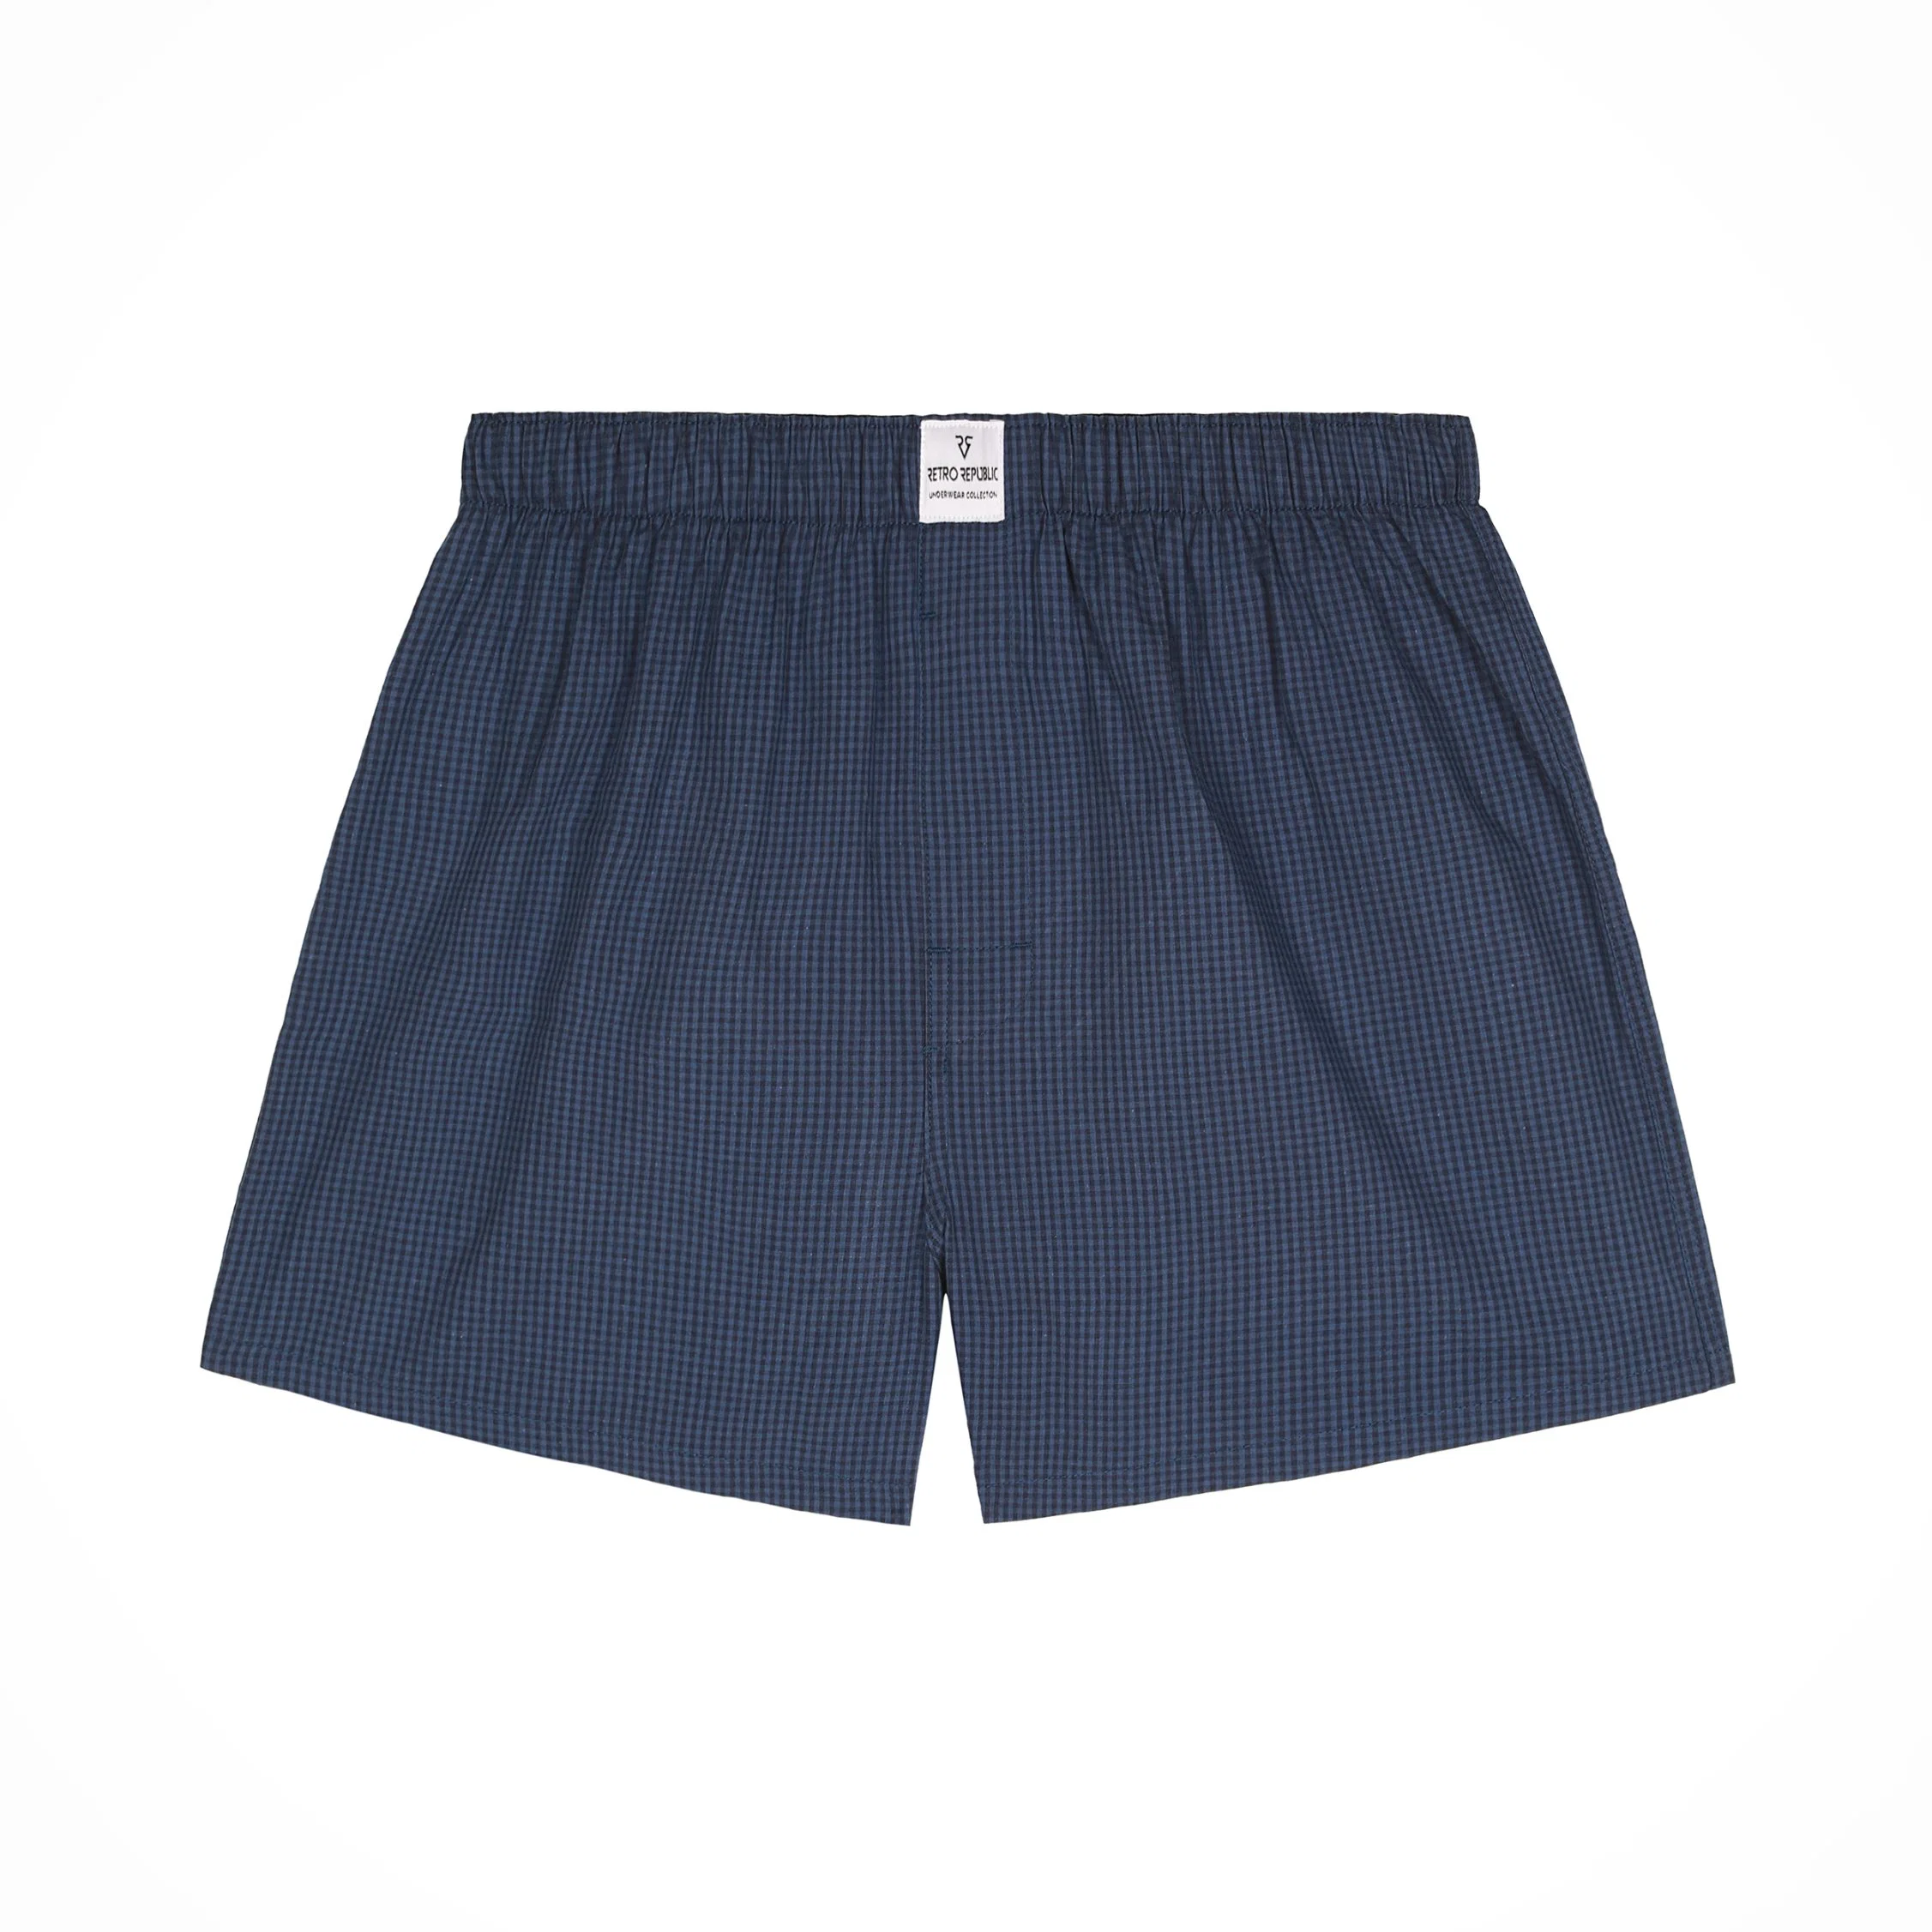 100% Cotton Men&prime; S Under Pants Wholesale Soft Fabric Short Pyjama Pants